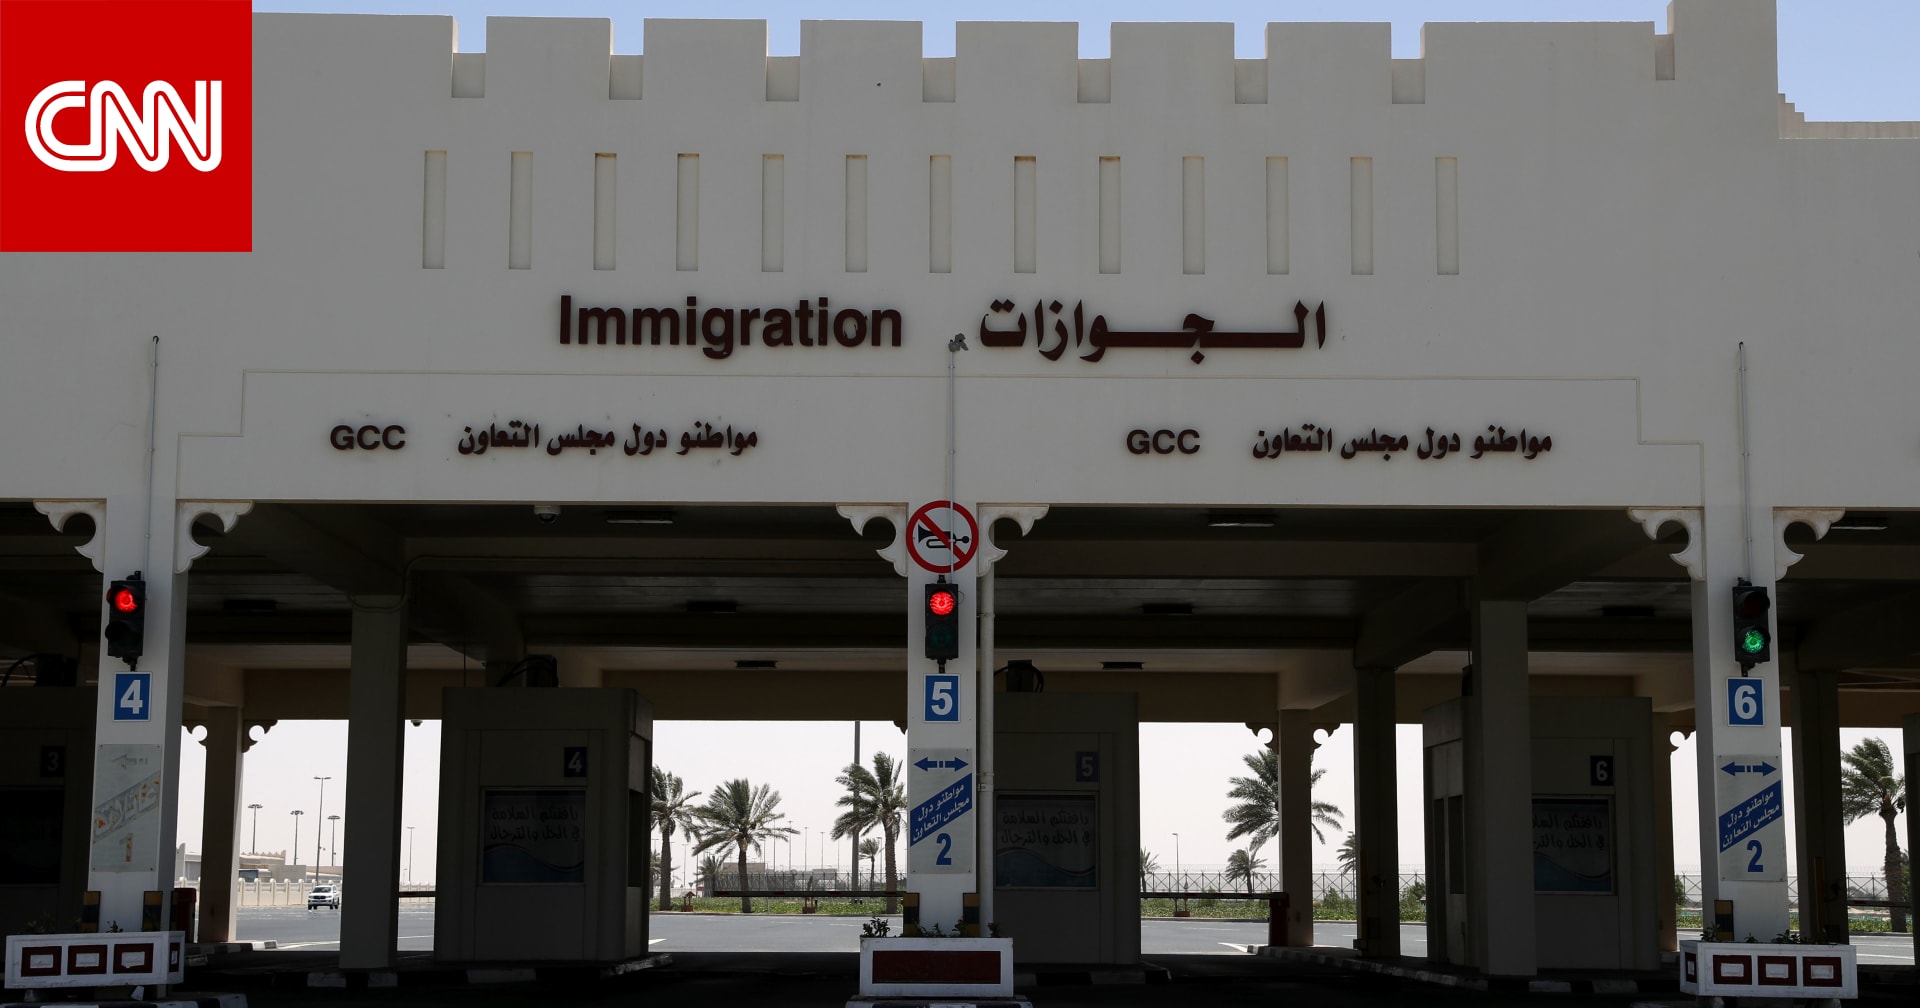 السعودية توضح إجراءات بمقاطعة قطر وترد على قضايا أثيرت بالأرقام الرسمية - CNN Arabic